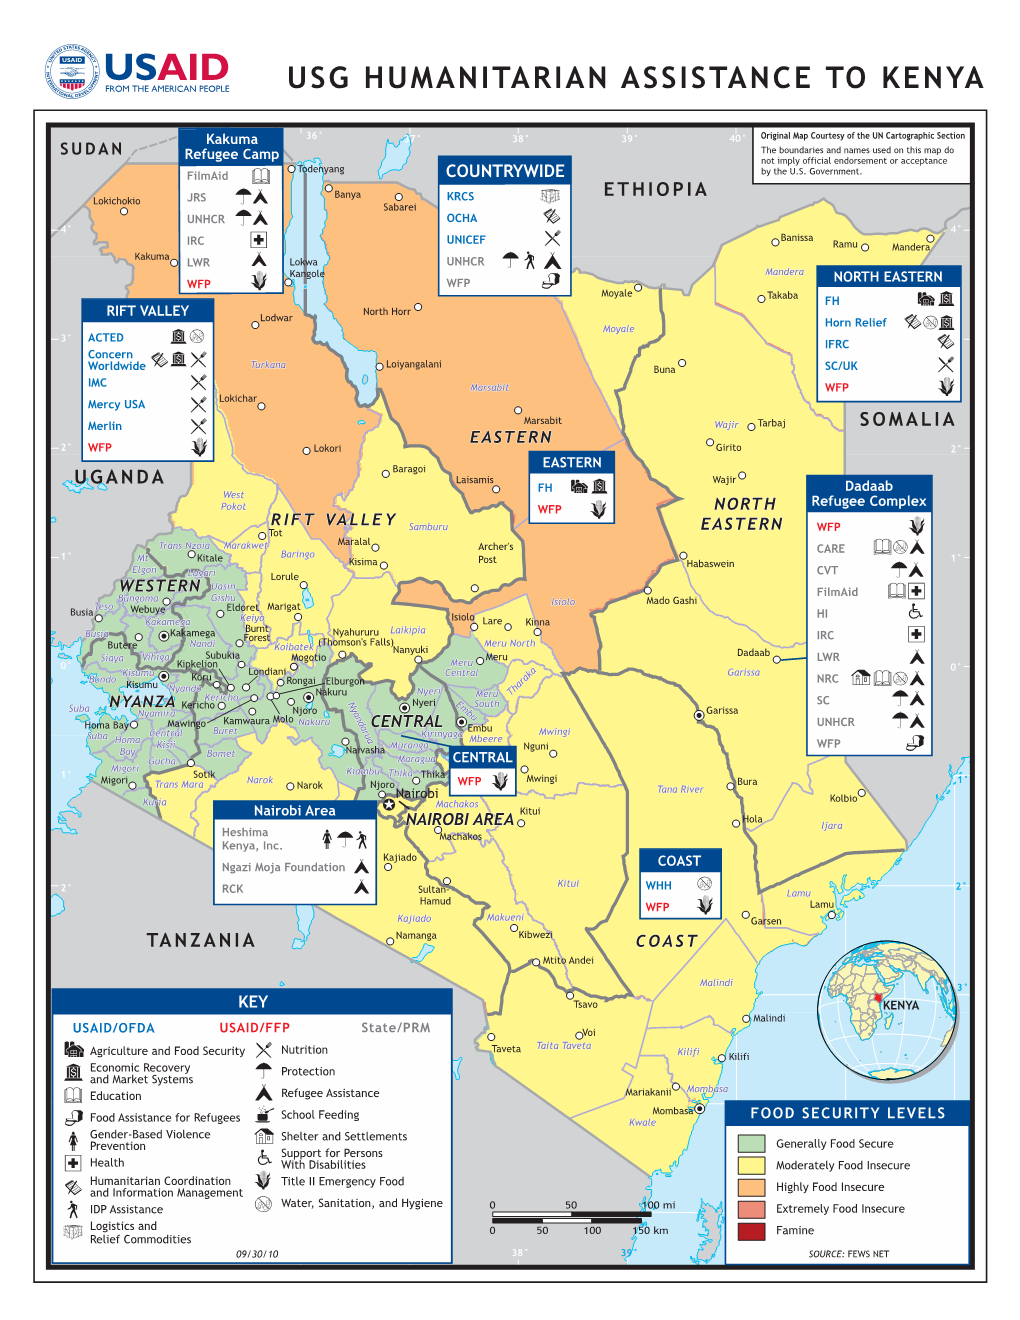 USAID/OFDA Kenya Program Map 9/30/2010